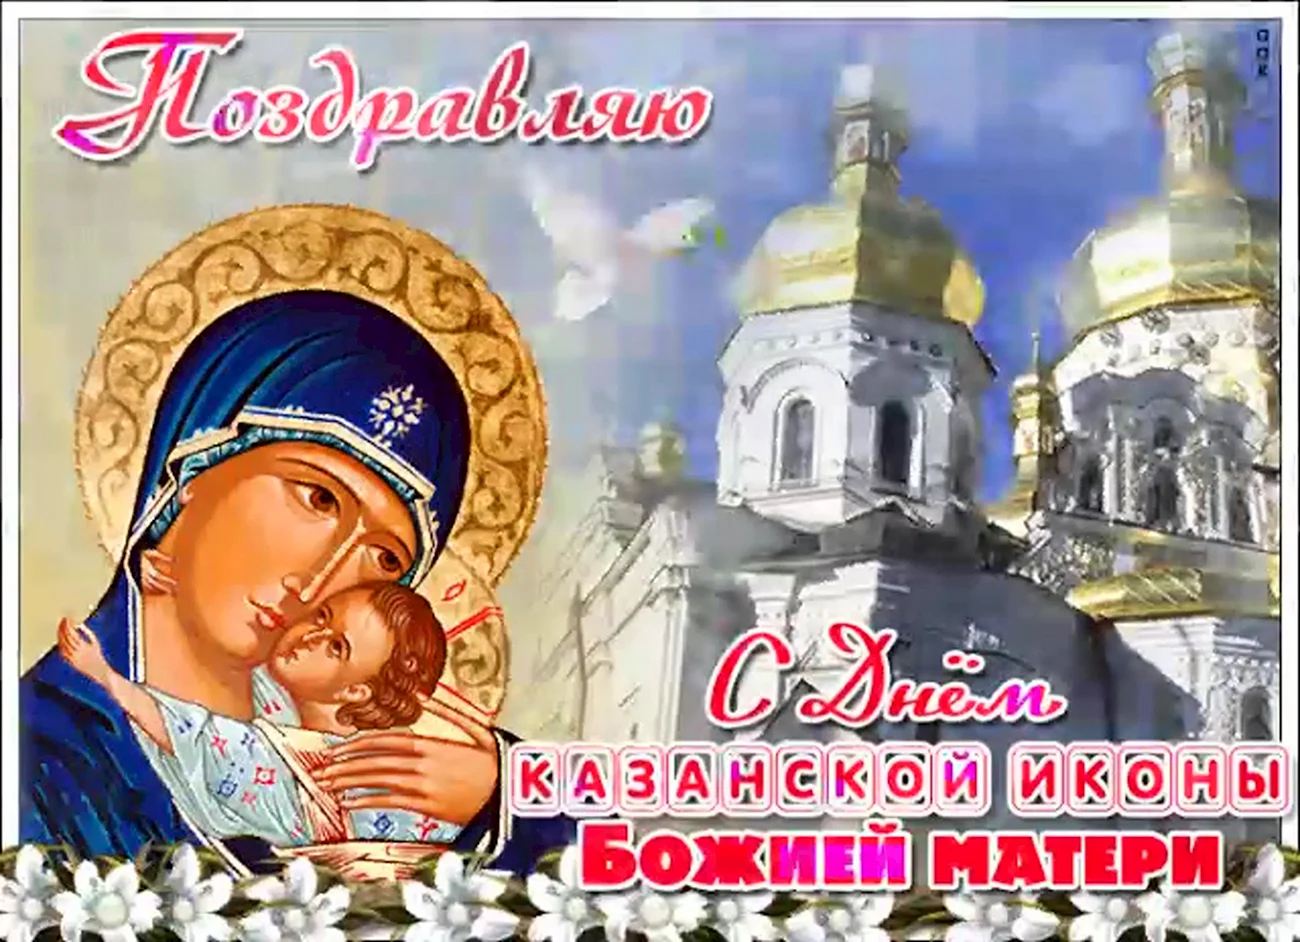 Открытки с днём Казанской Божьей матери 21. Поздравление